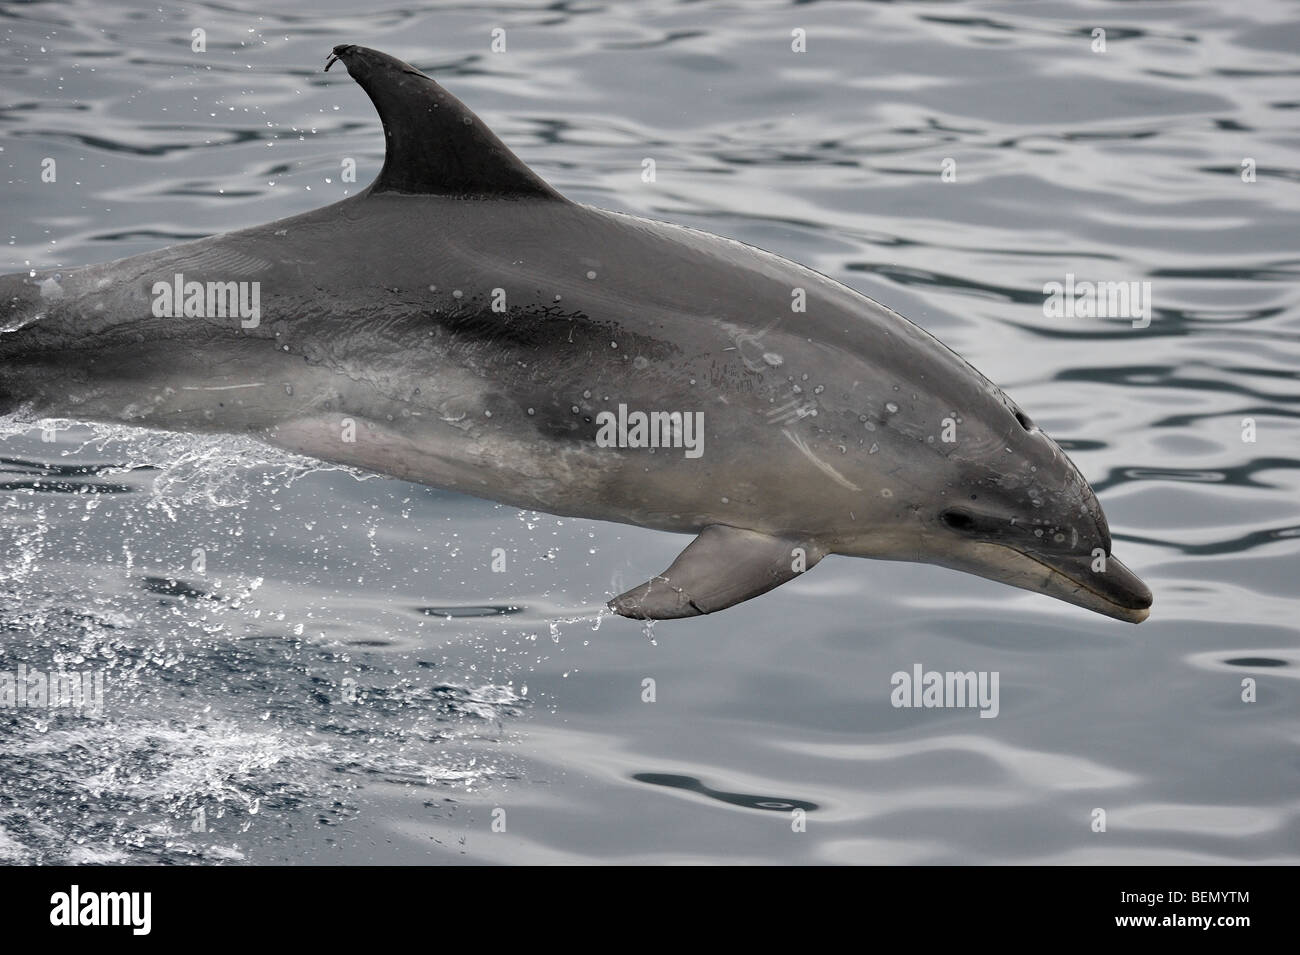 Común, Delfín mular Tursiops truncatus porpoising. Azores, el Océano Atlántico. Foto de stock